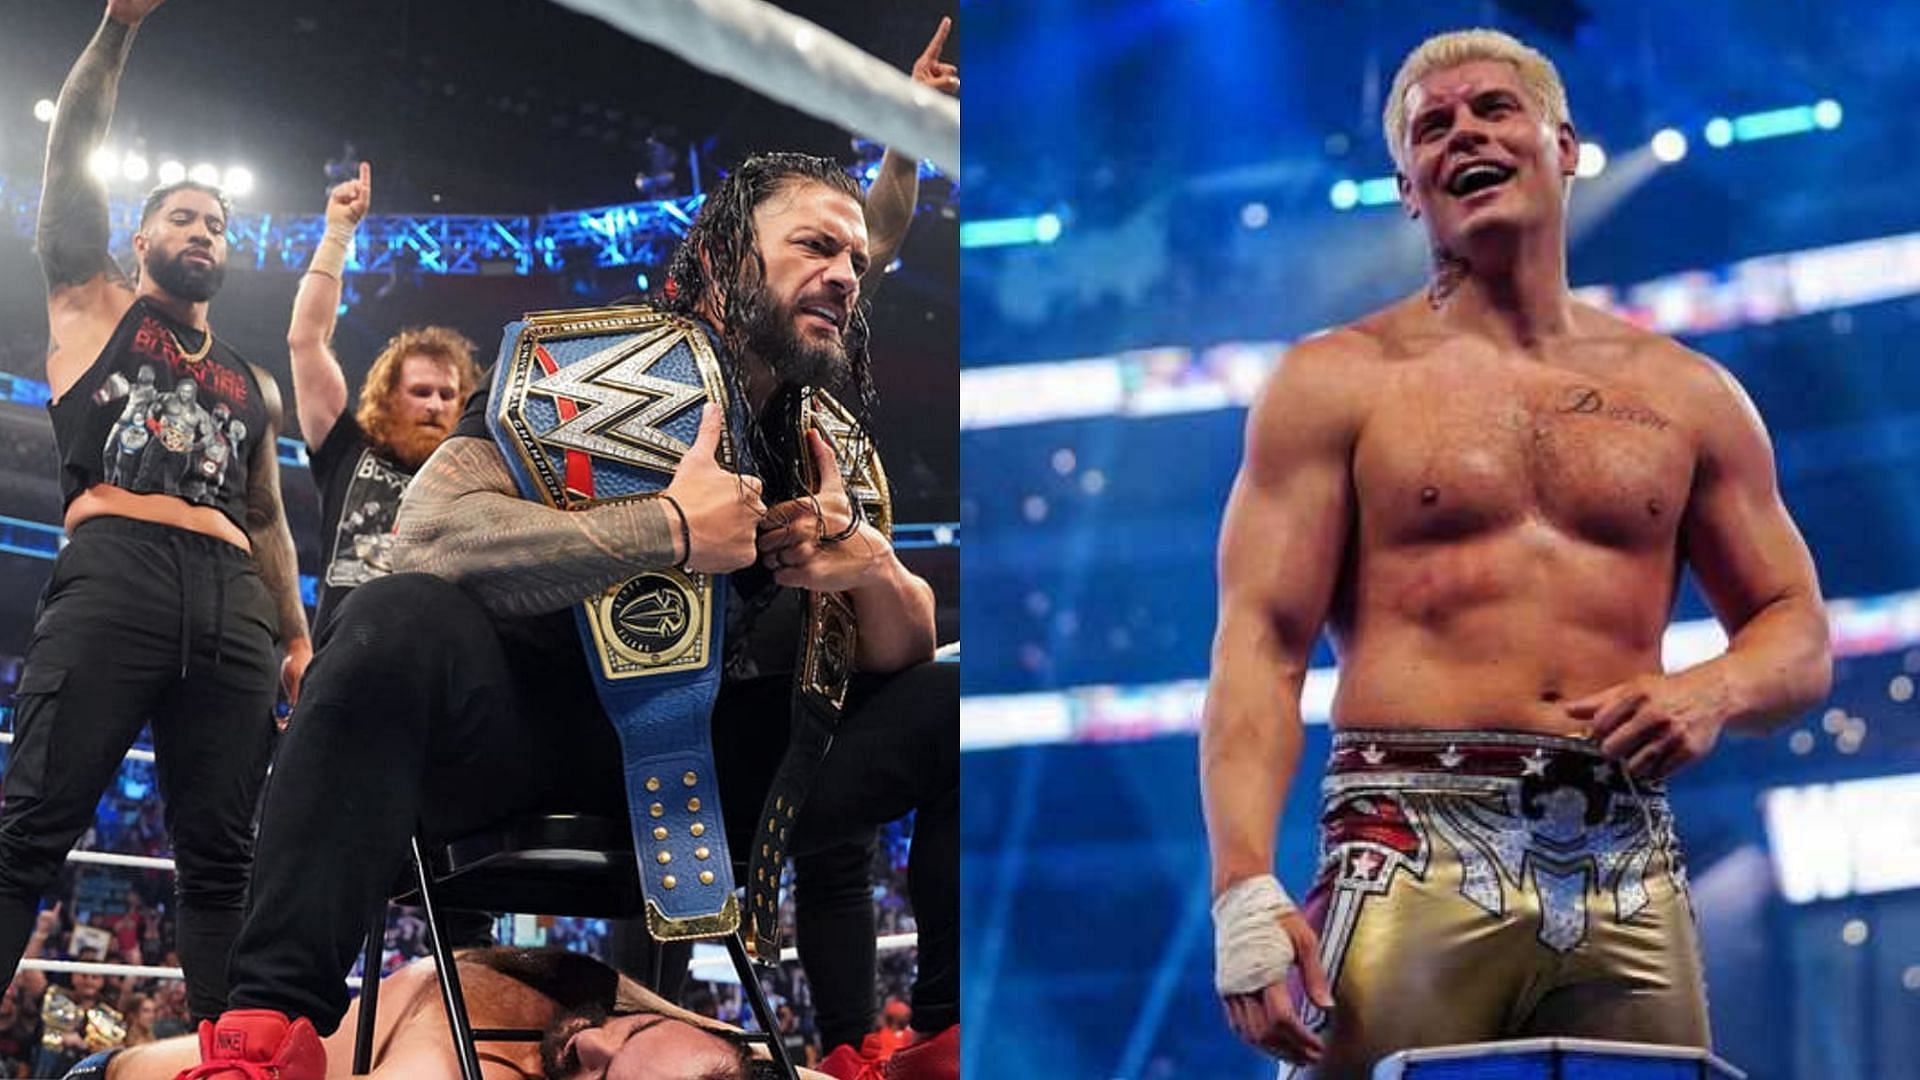 Cody Rhodes is a major babyface in WWE